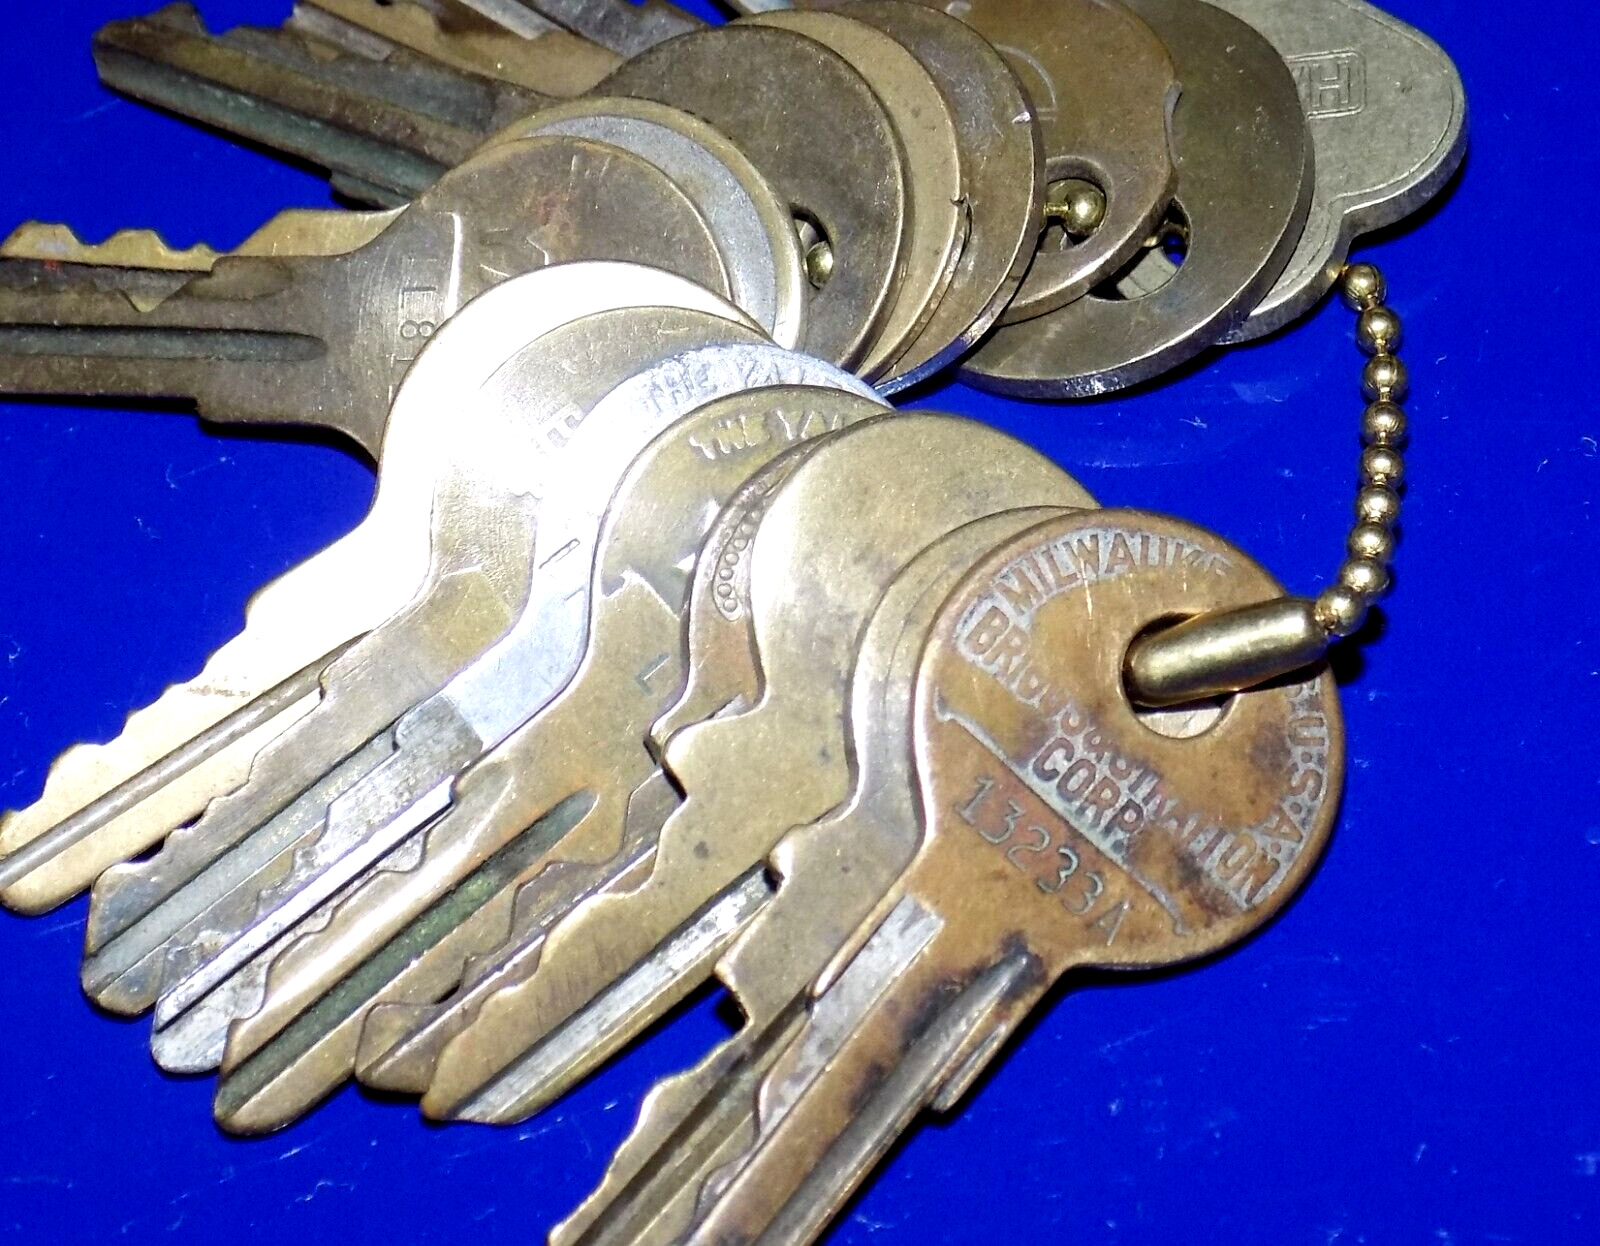 Lot of Well-Worn Vintage Keys